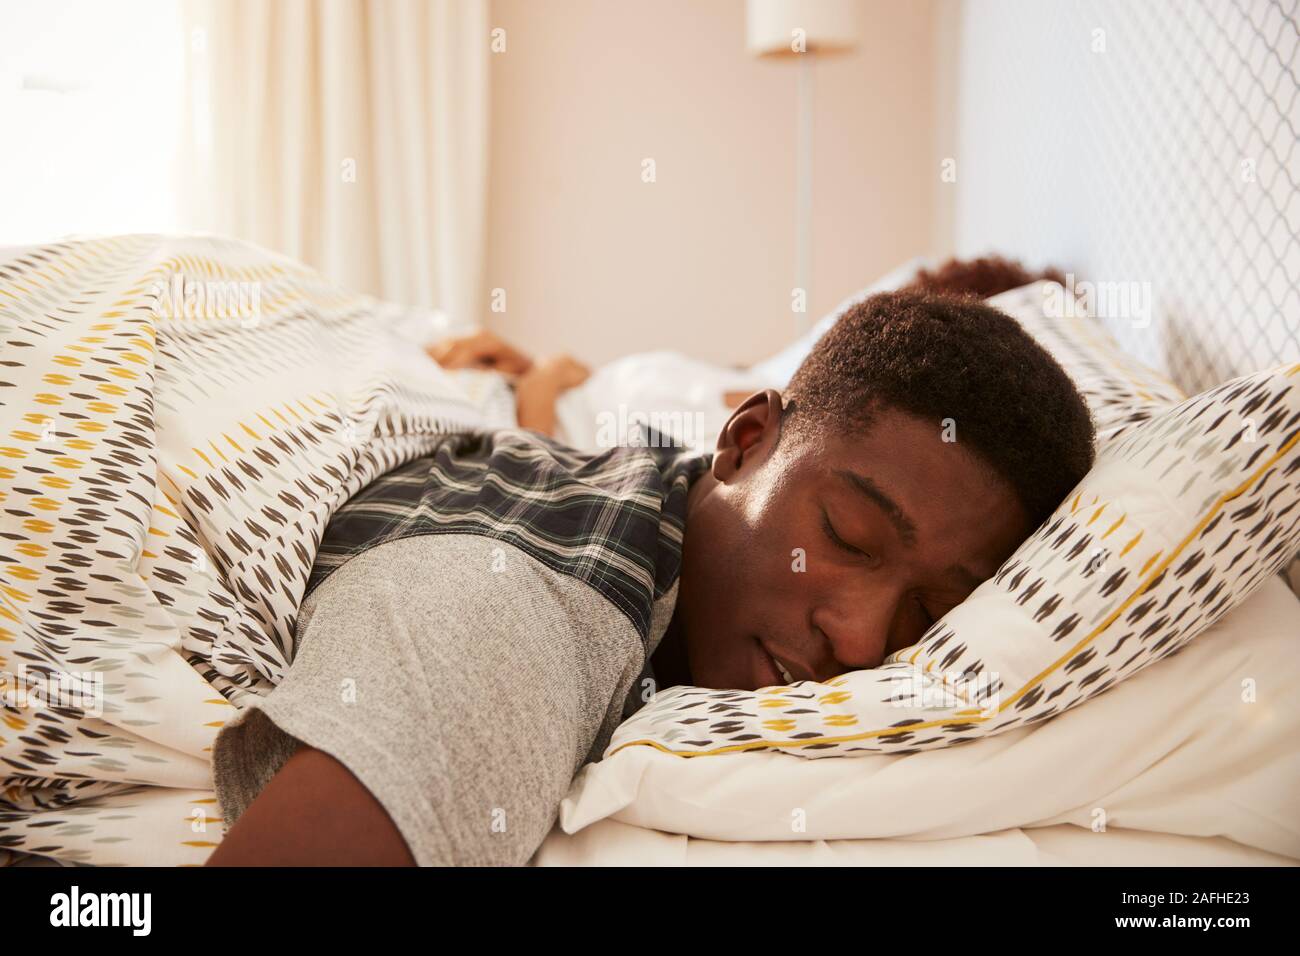 Giovane americano africano uomo disteso addormentato nel letto la mattina, partner in background, la messa a fuoco su oggetti in primo piano Foto Stock